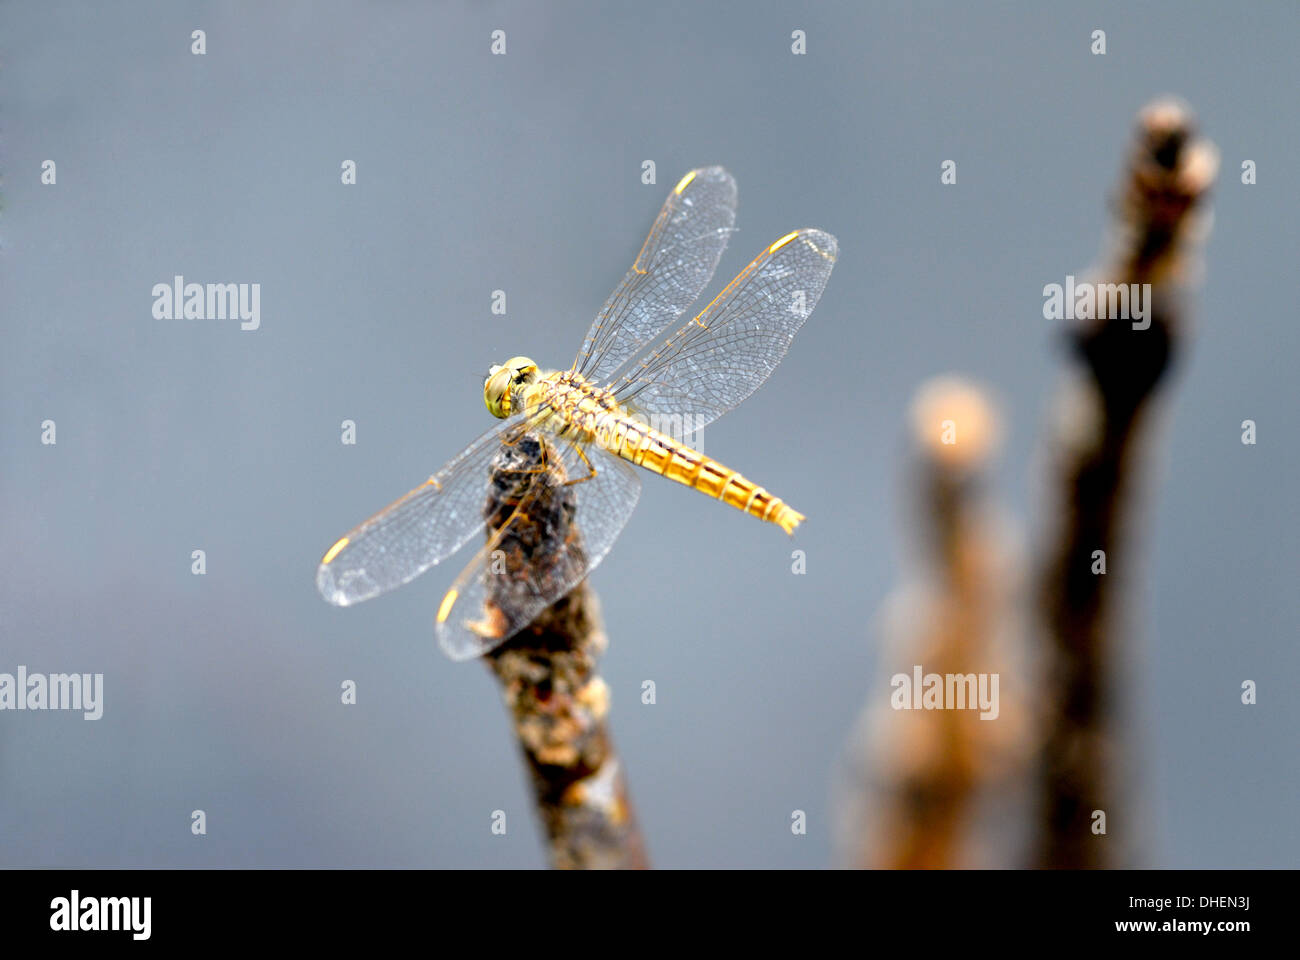 Dragonfly on stump, Kumarakom, Kerala, India, Asia Stock Photo